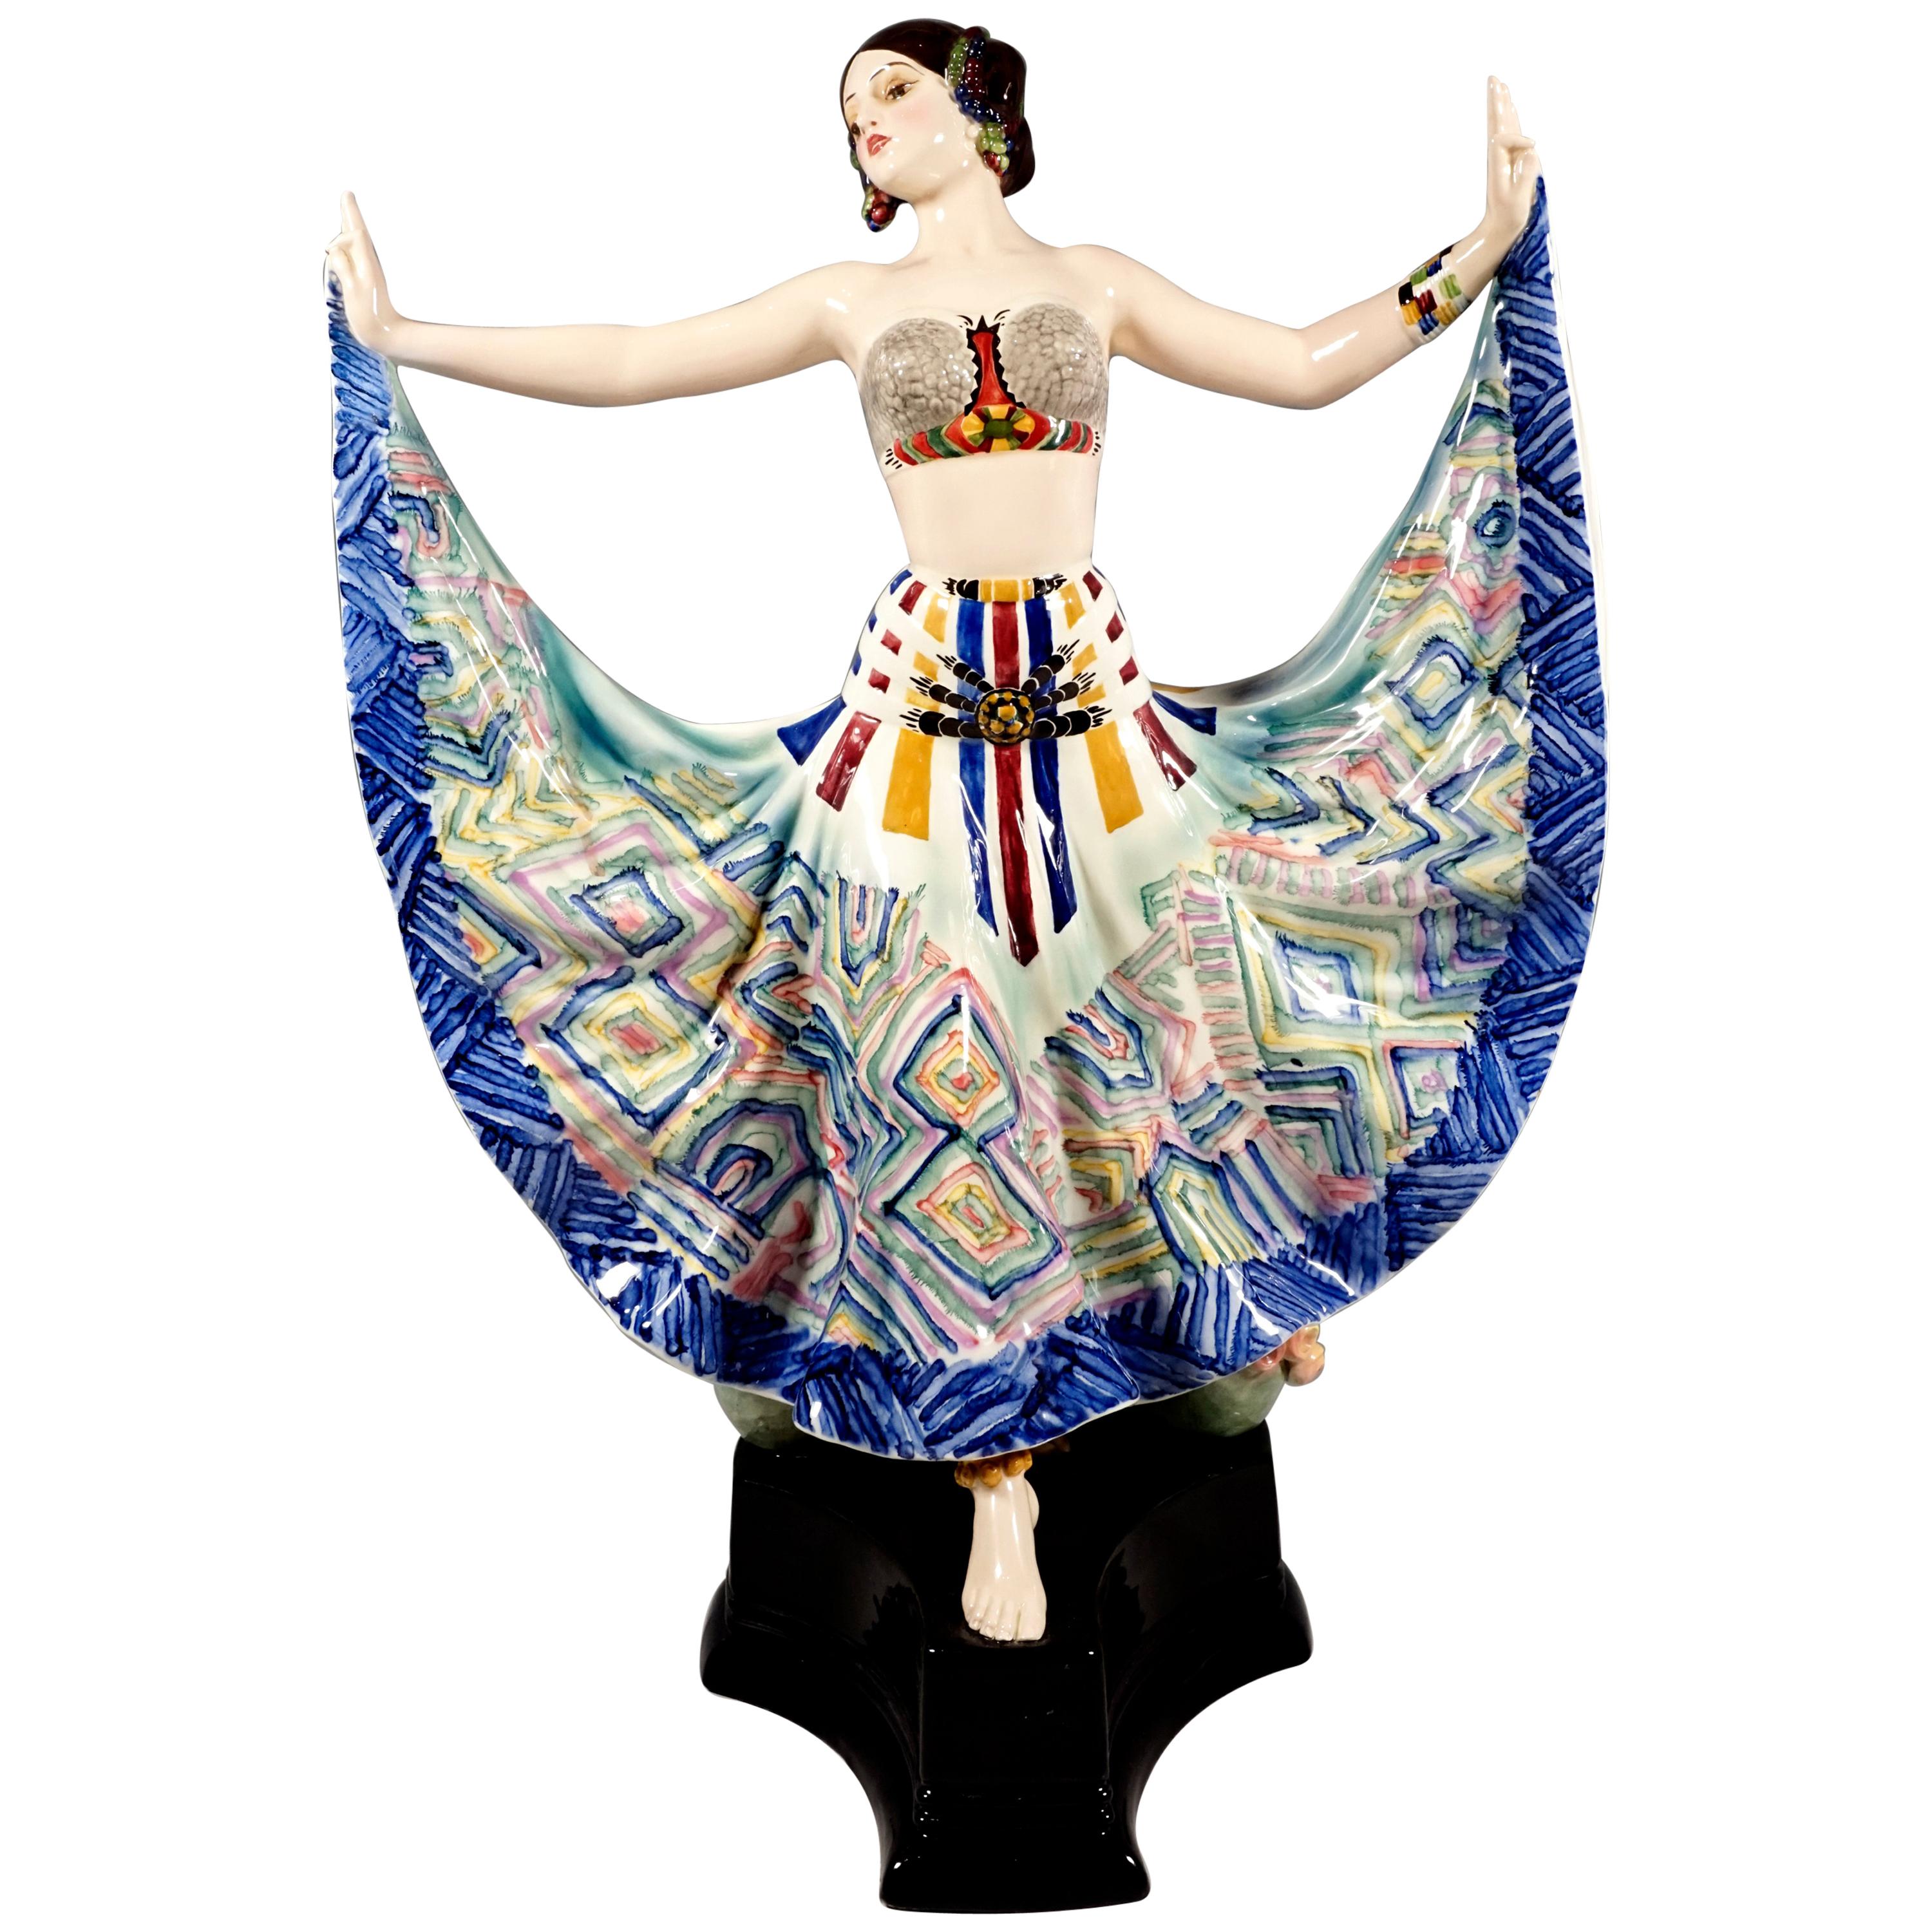 Goldscheider Vienna Art Deco Figure, 'Ruth' Dancer in Oriental Costume by Rosé